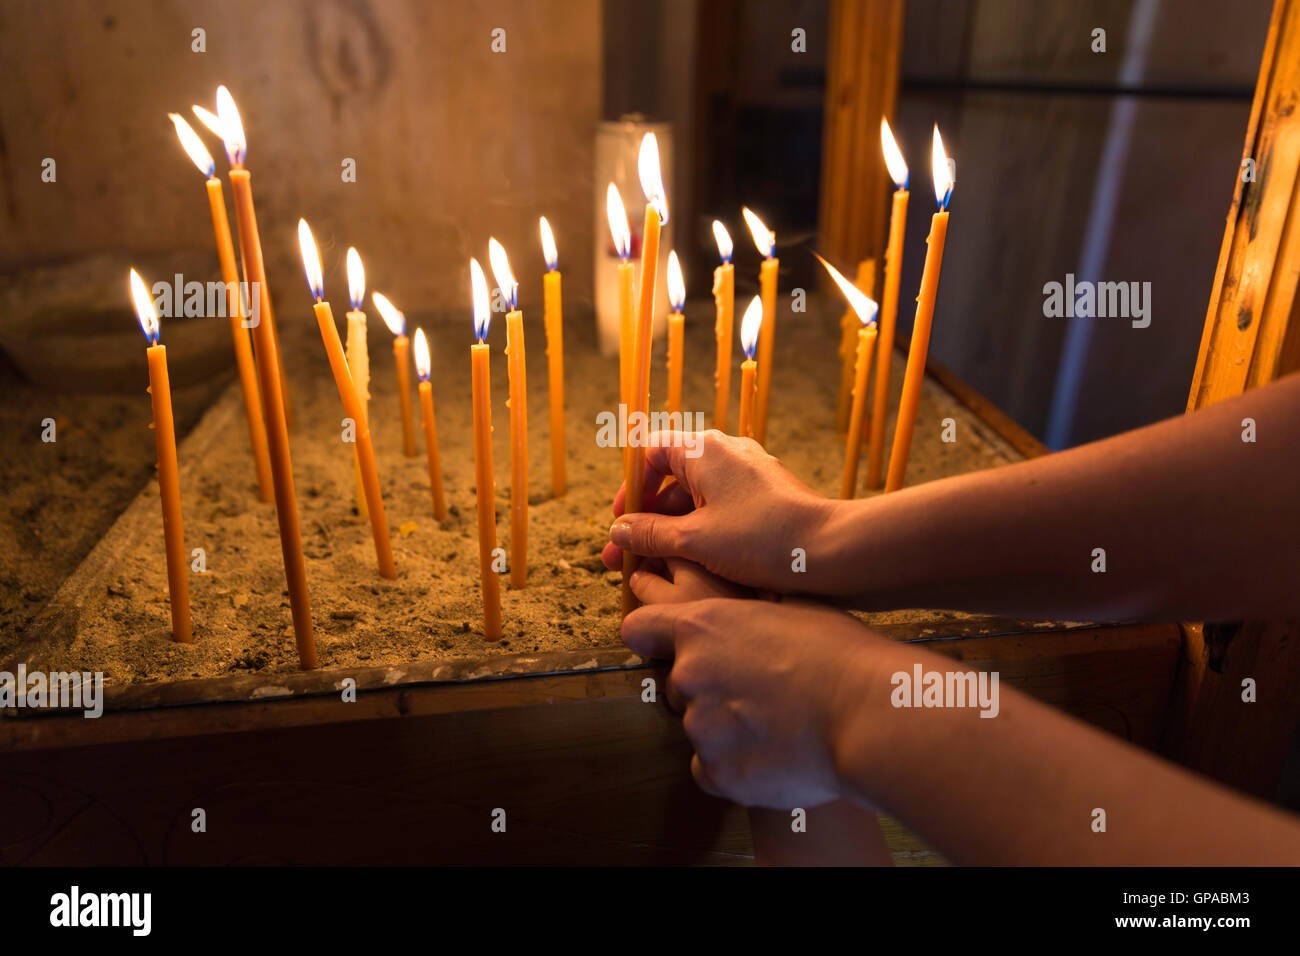 Ceremonia de encendido de velas fotografías e imágenes de alta resolución -  Alamy